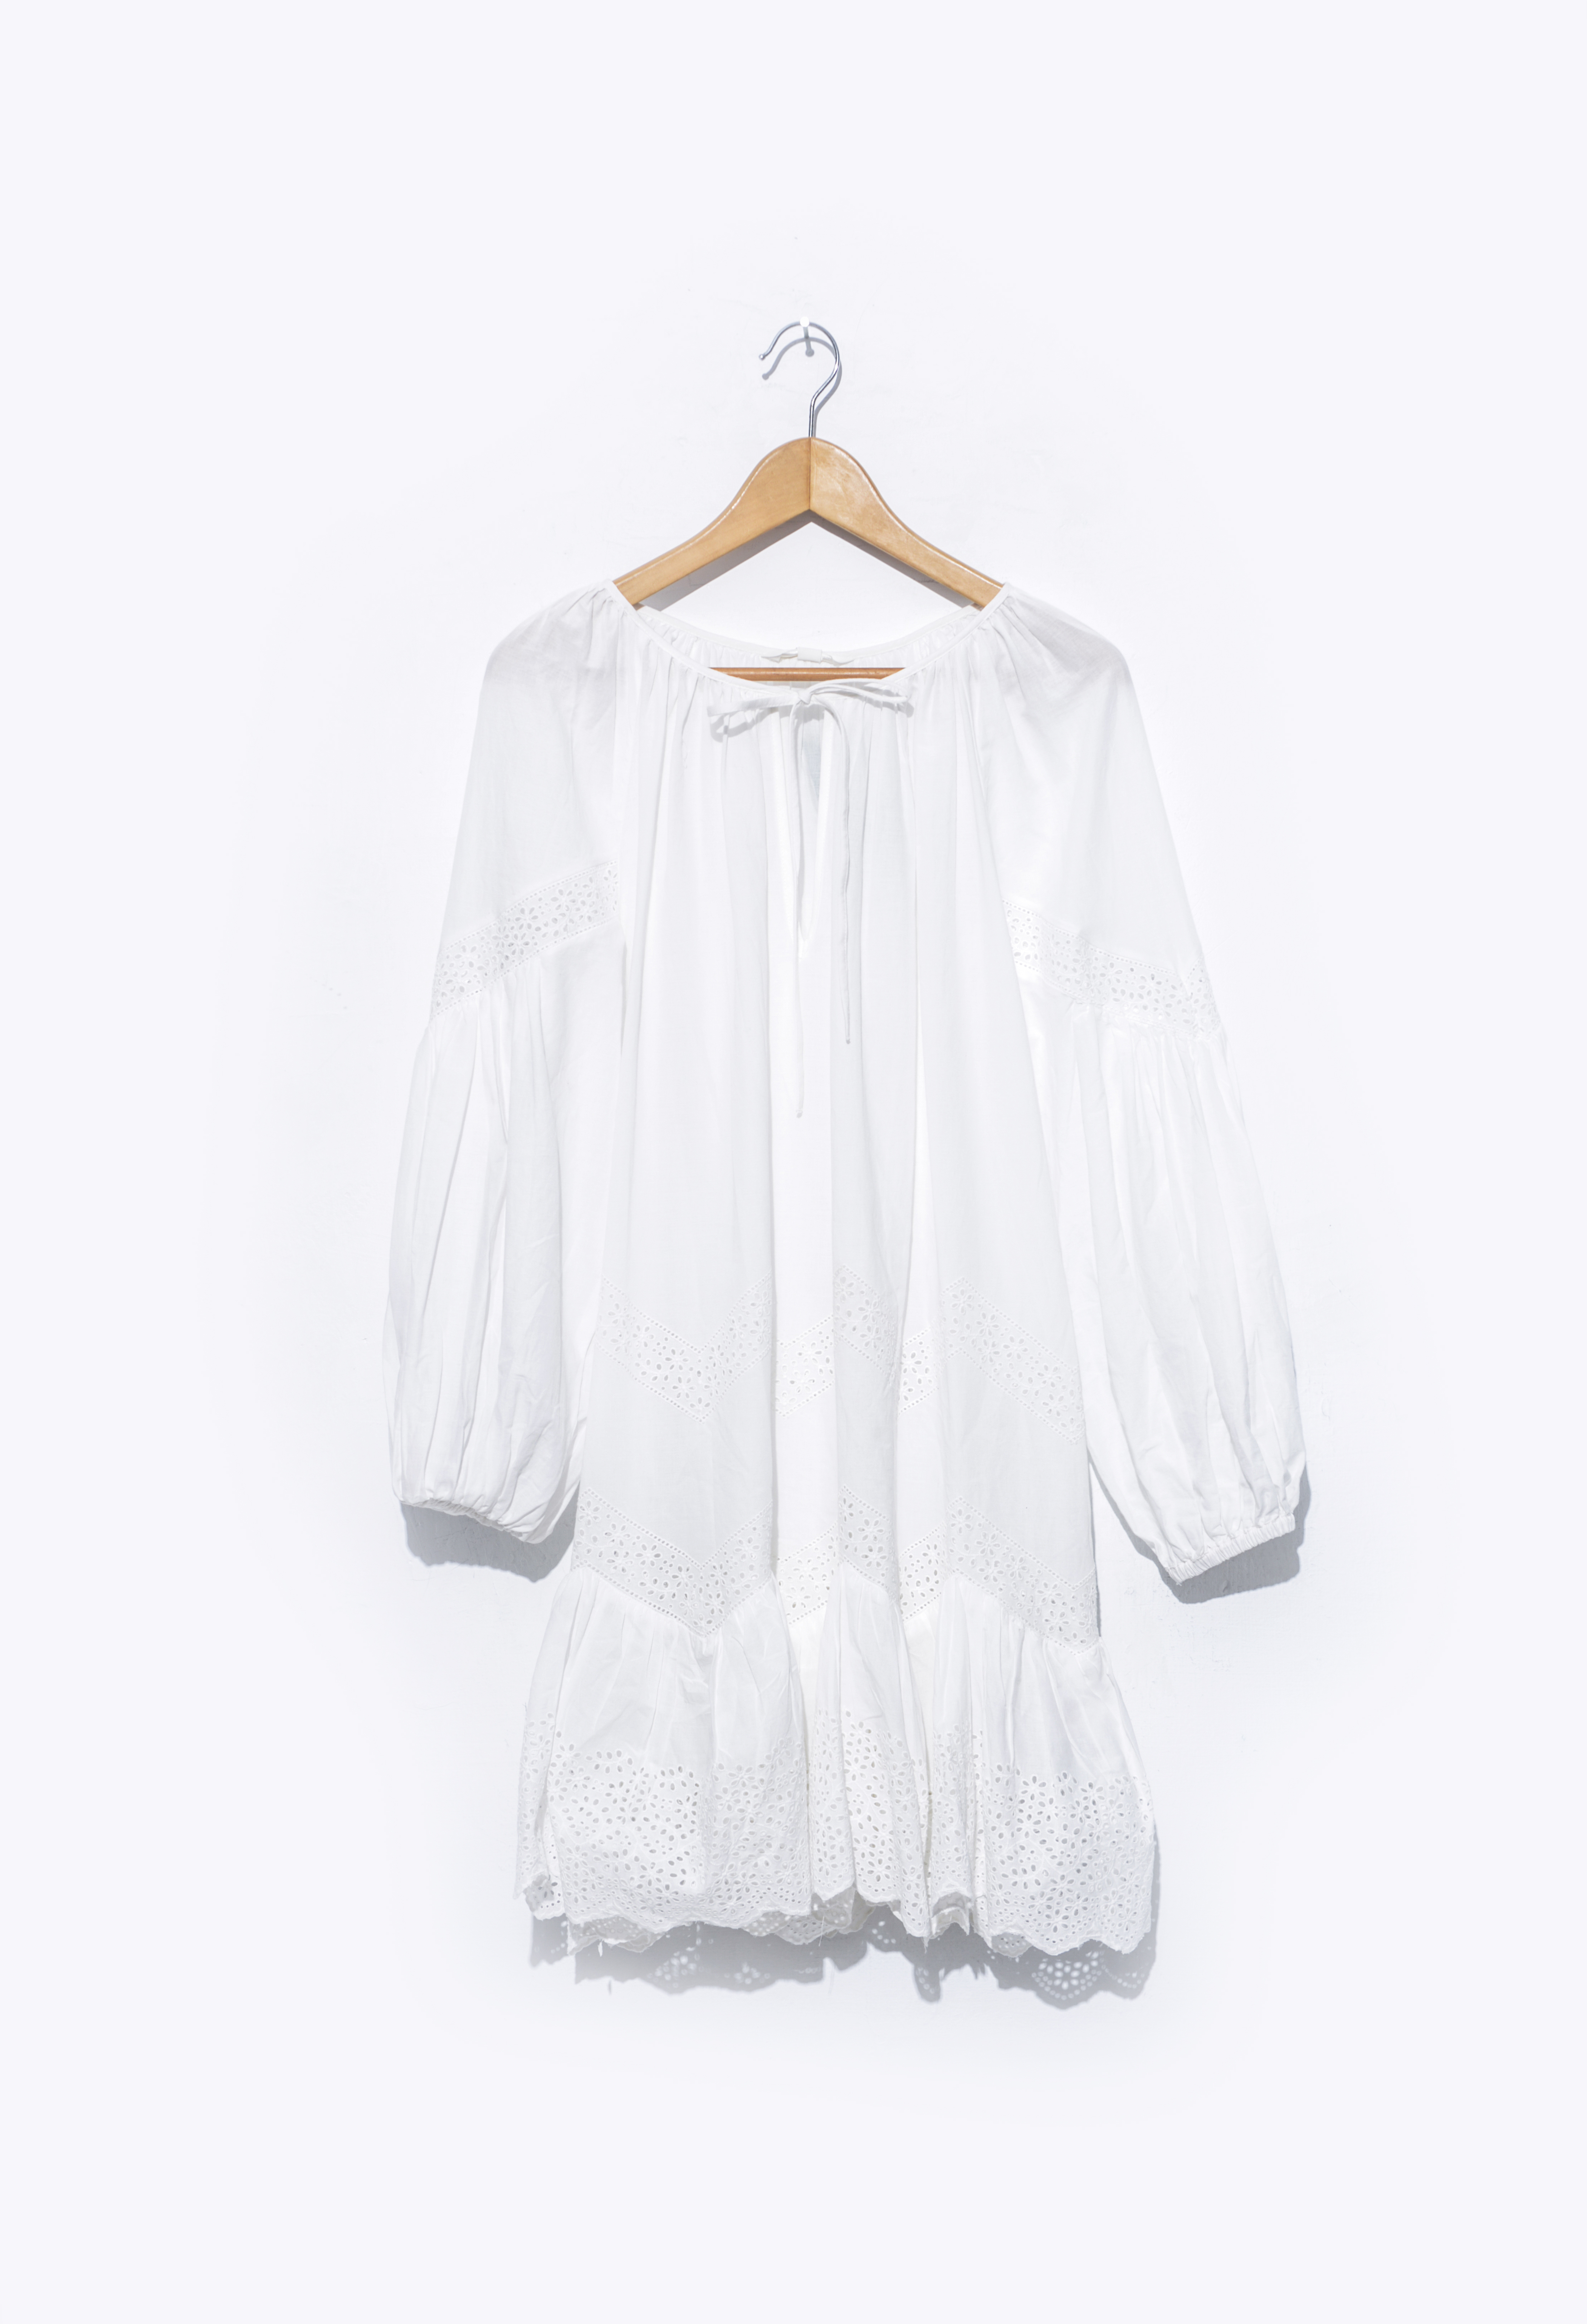 Vestido blanco en una percha | Foto: Shutterstock